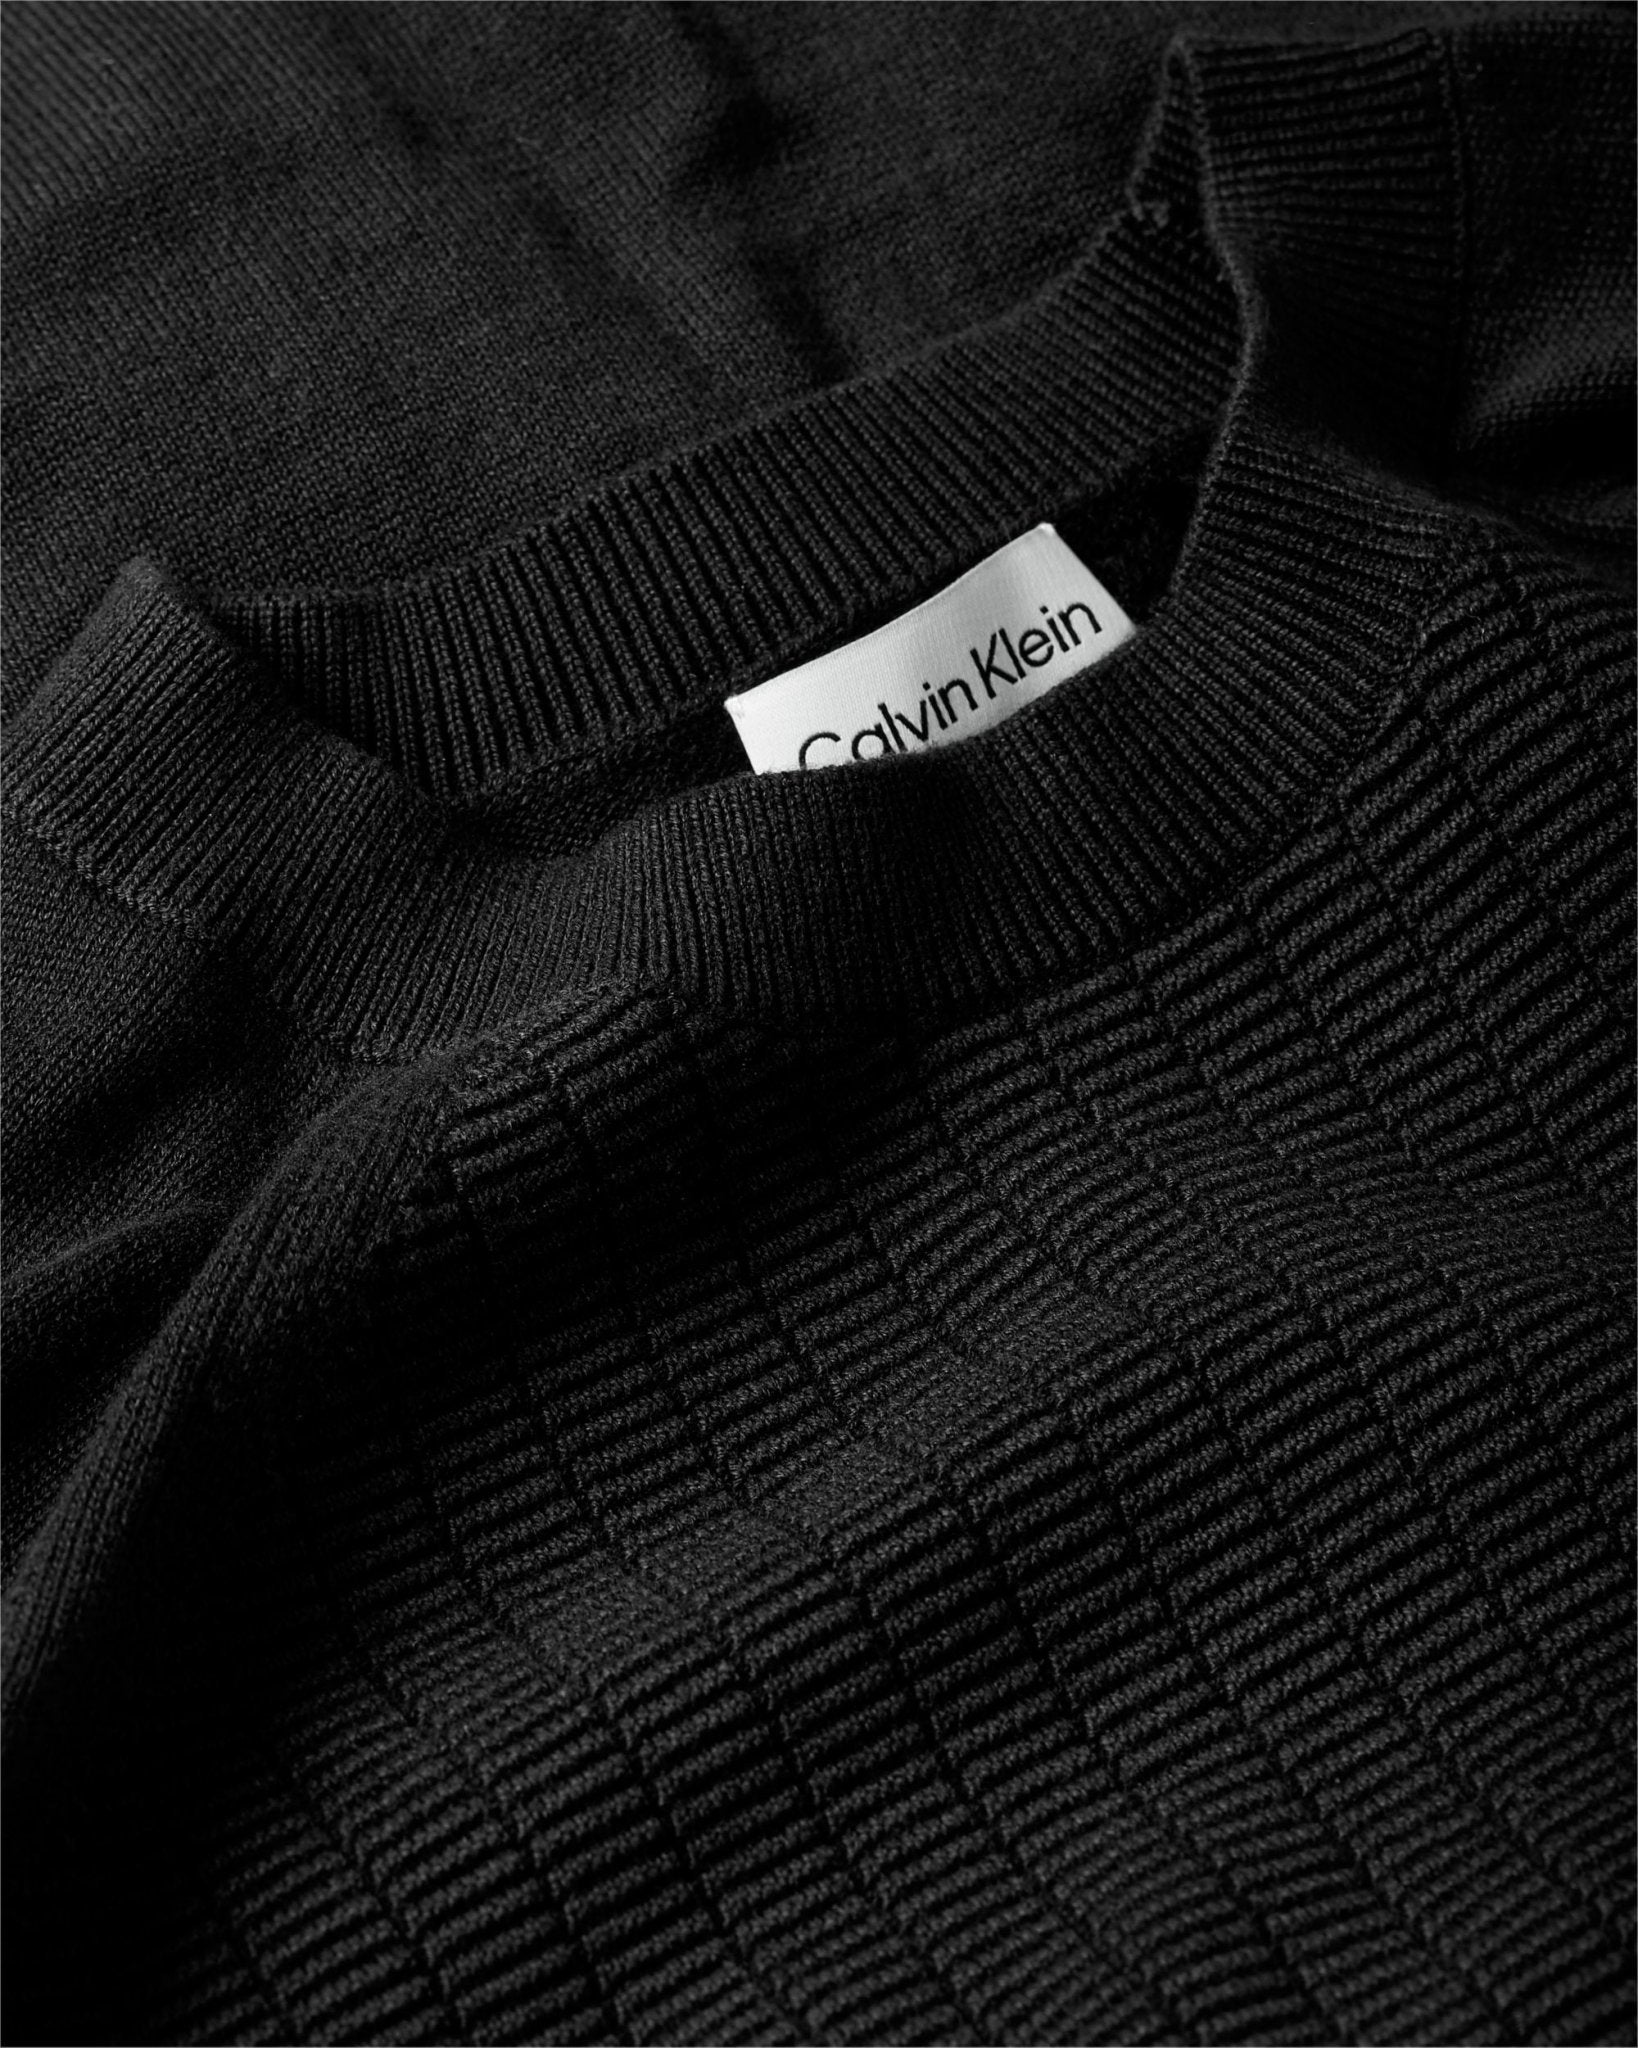 Calvin Klein Structured Raglan Sweater - Matt O'Brien Fashions